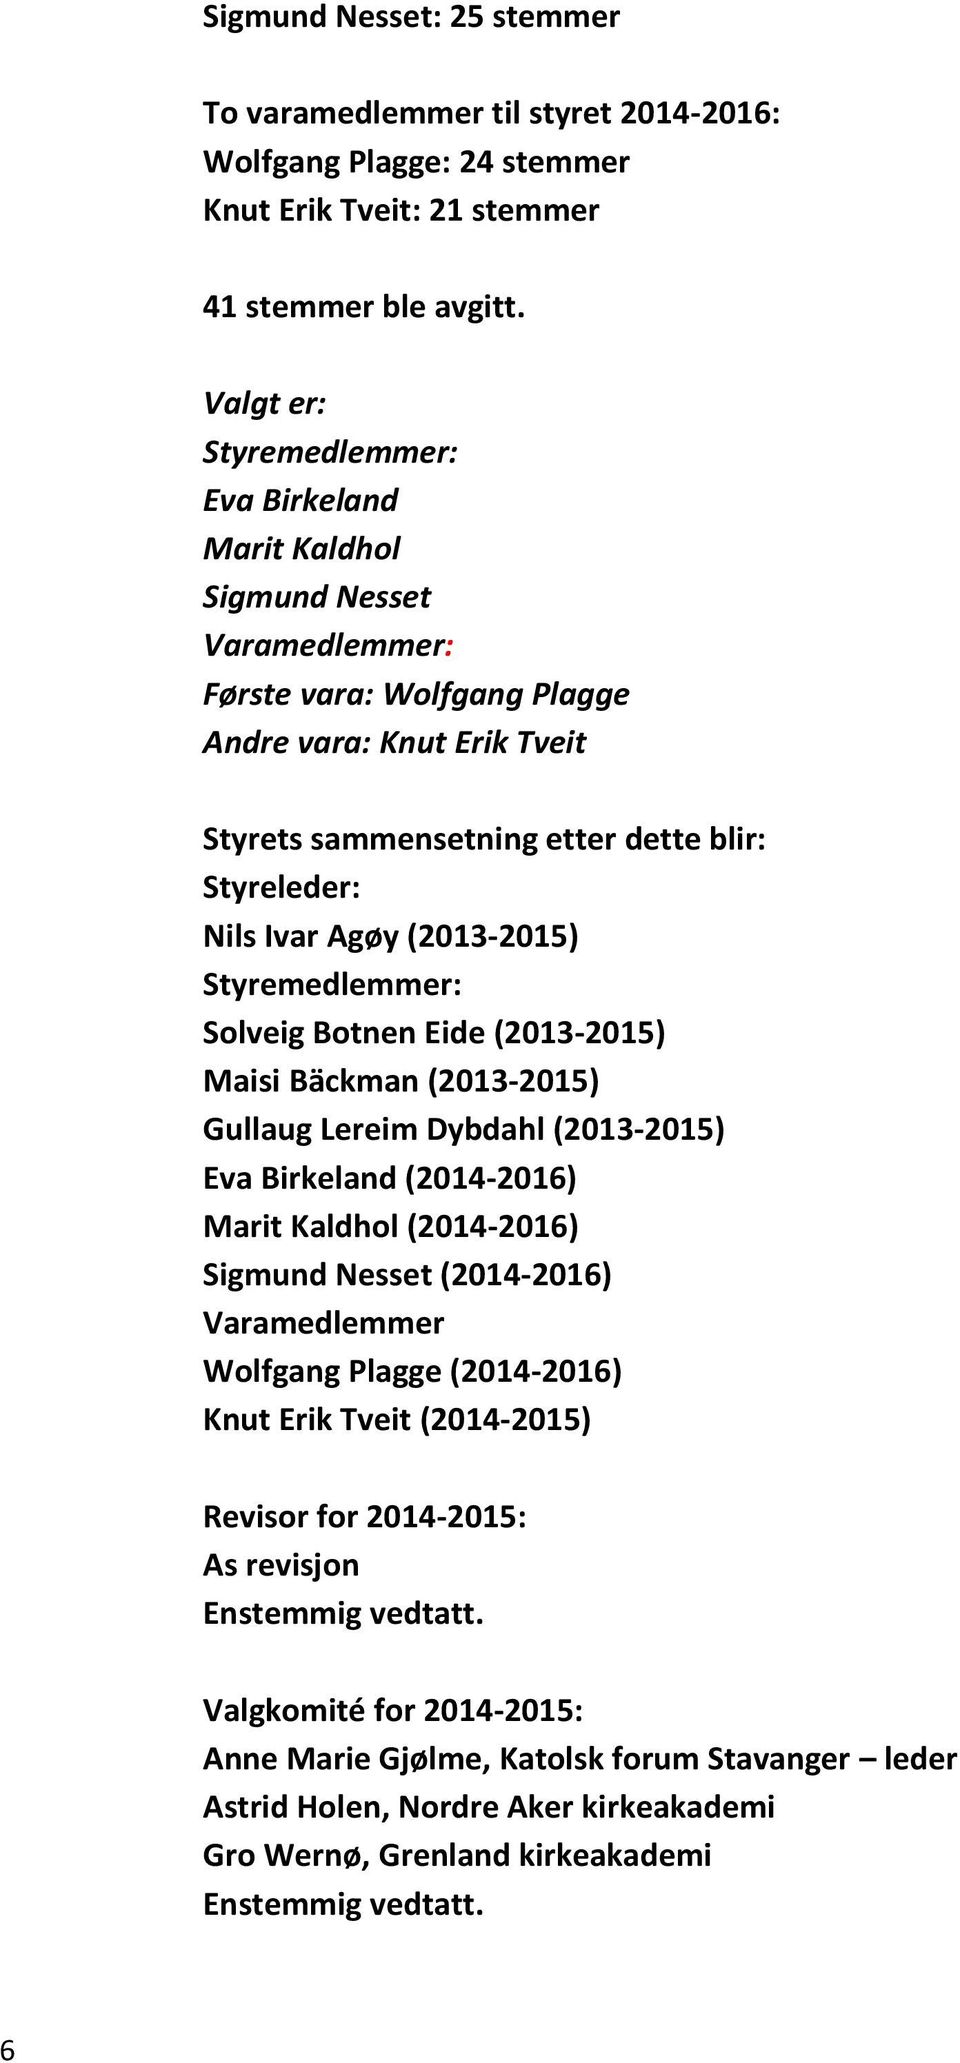 Ivar Agøy (2013-2015) Styremedlemmer: Solveig Botnen Eide (2013-2015) Maisi Bäckman (2013-2015) Gullaug Lereim Dybdahl (2013-2015) Eva Birkeland (2014-2016) Marit Kaldhol (2014-2016) Sigmund Nesset